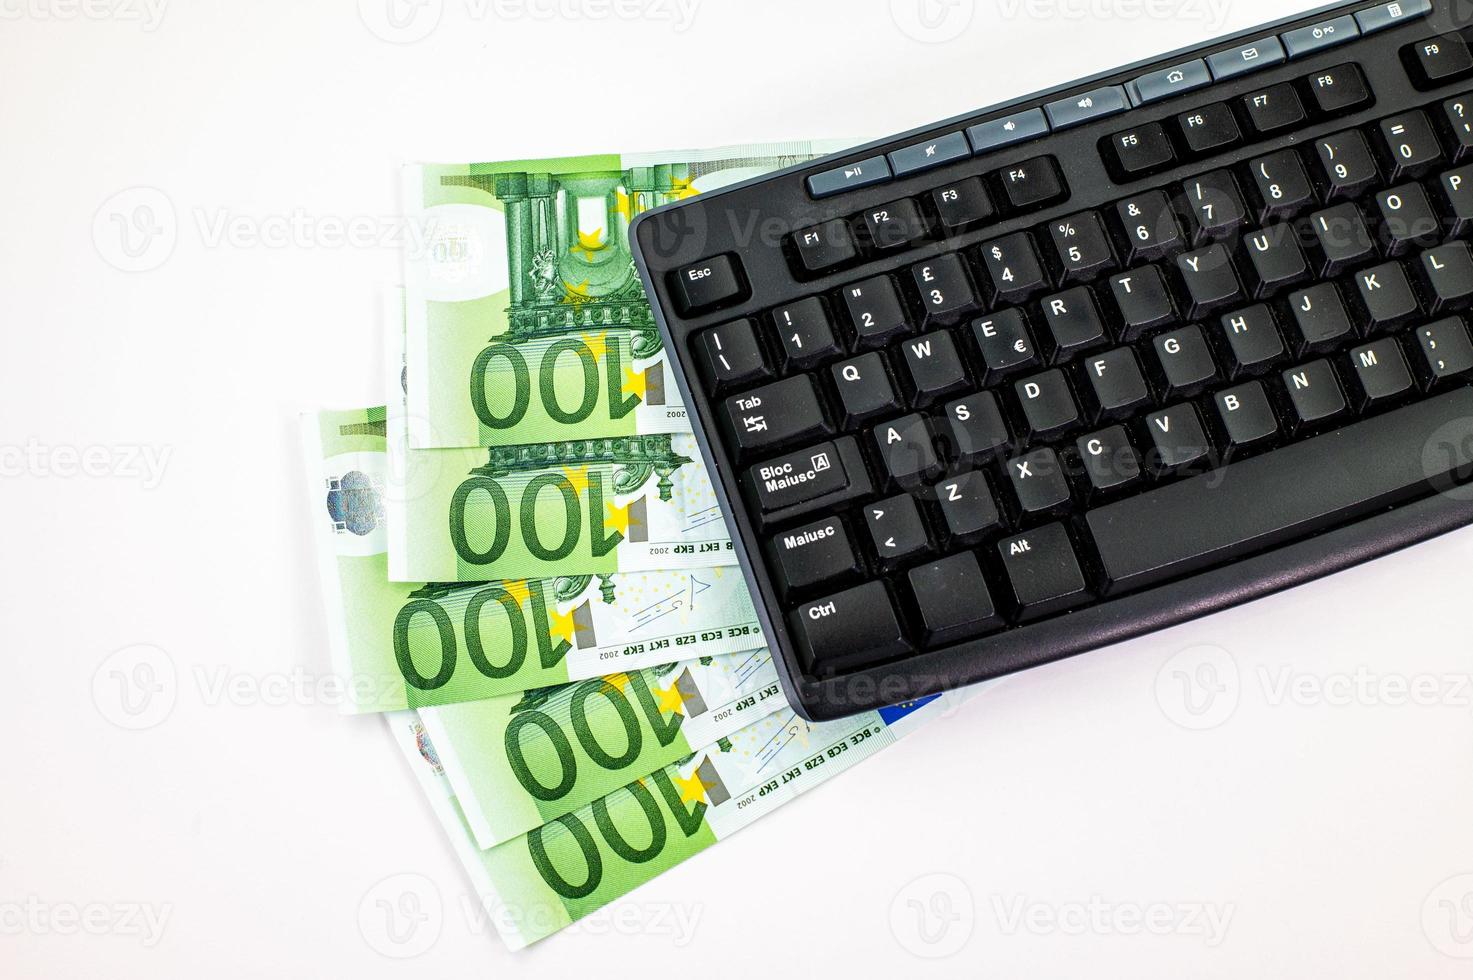 banconote da 100 euro a ventaglio con tastiera pc foto